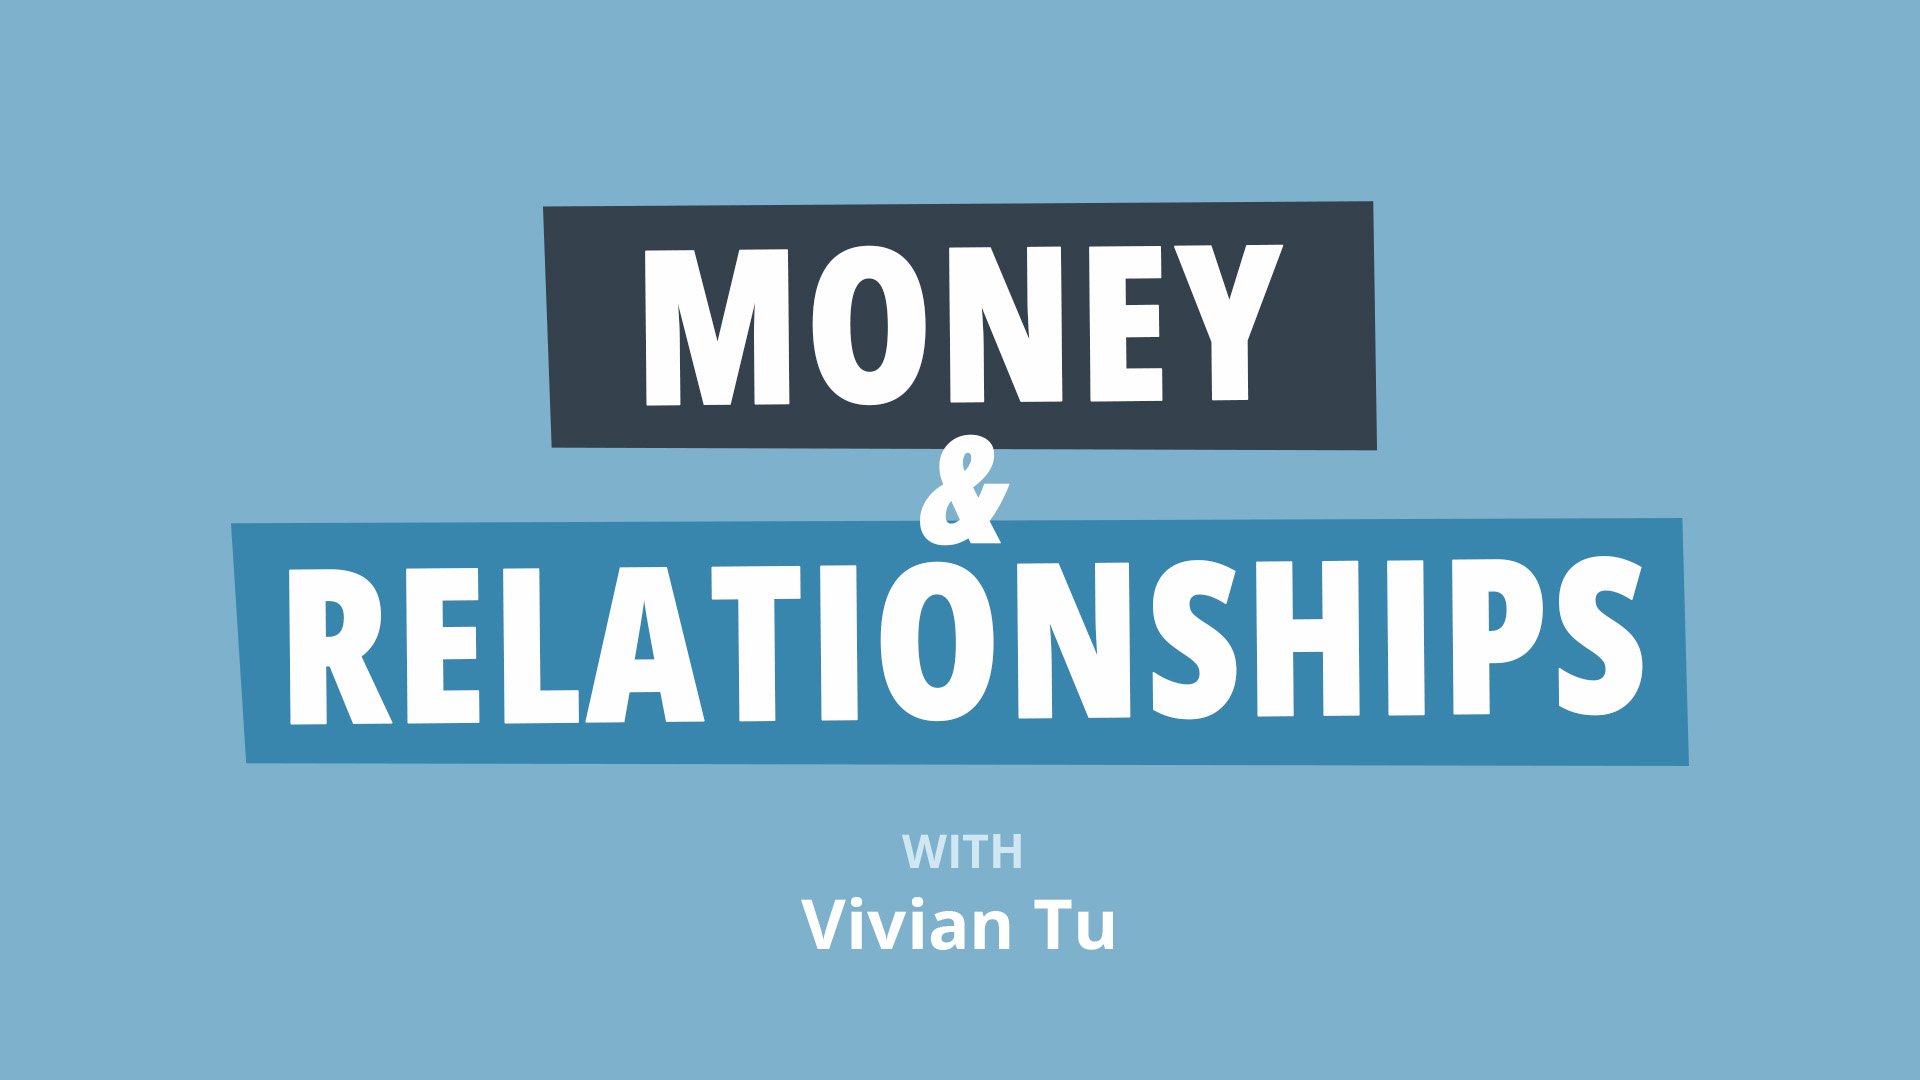 پیسہ اور تعلقات: "دی ٹاک" کیسے کریں اس سے پہلے کہ بہت دیر ہو جائے